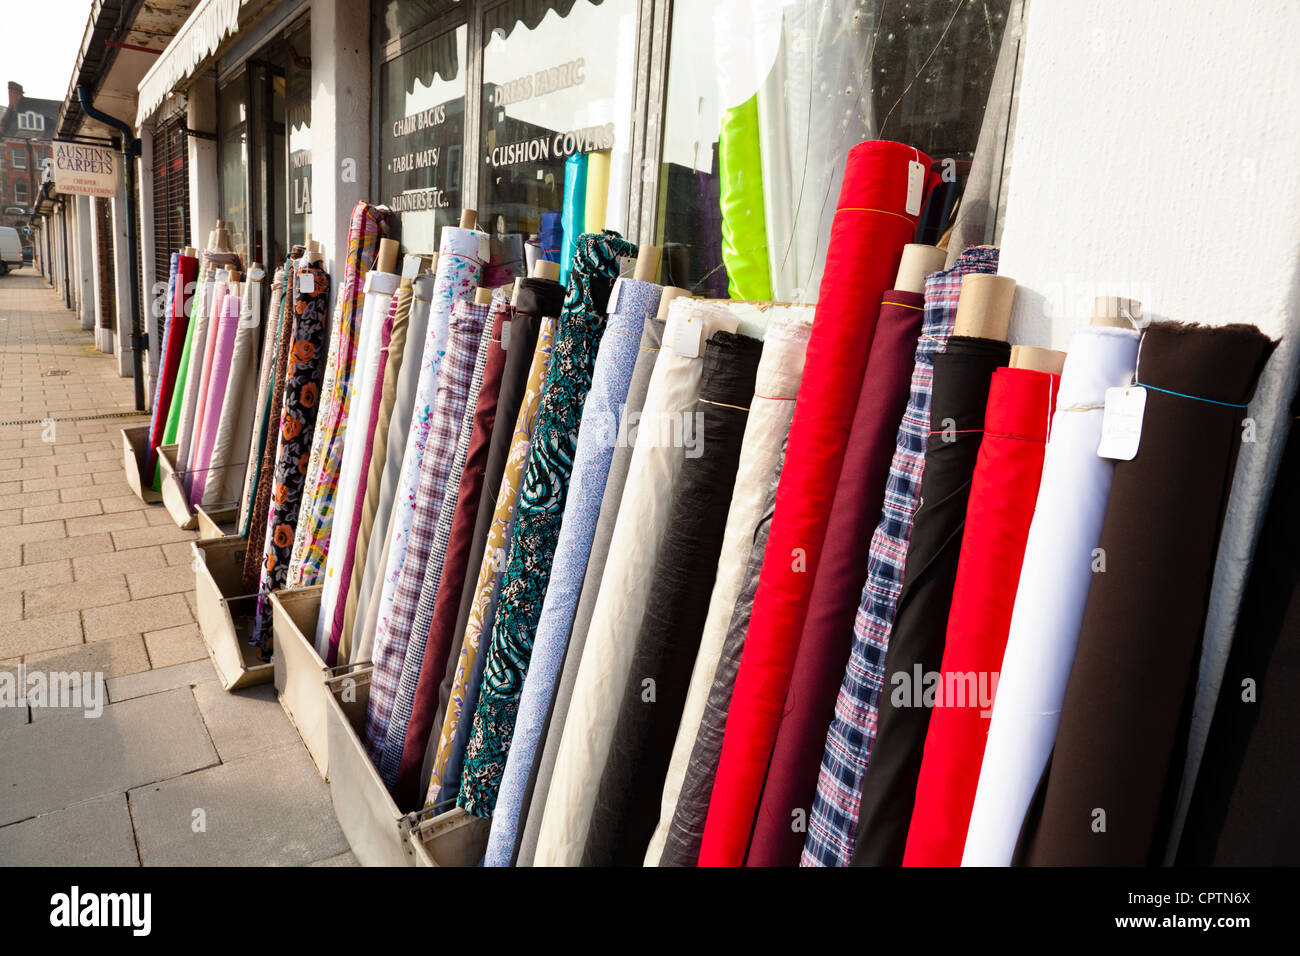 La mercerie boutique avec des rouleaux de tissu et de matériel à l'extérieur, marché Sneinton, Nottingham, England, UK Banque D'Images